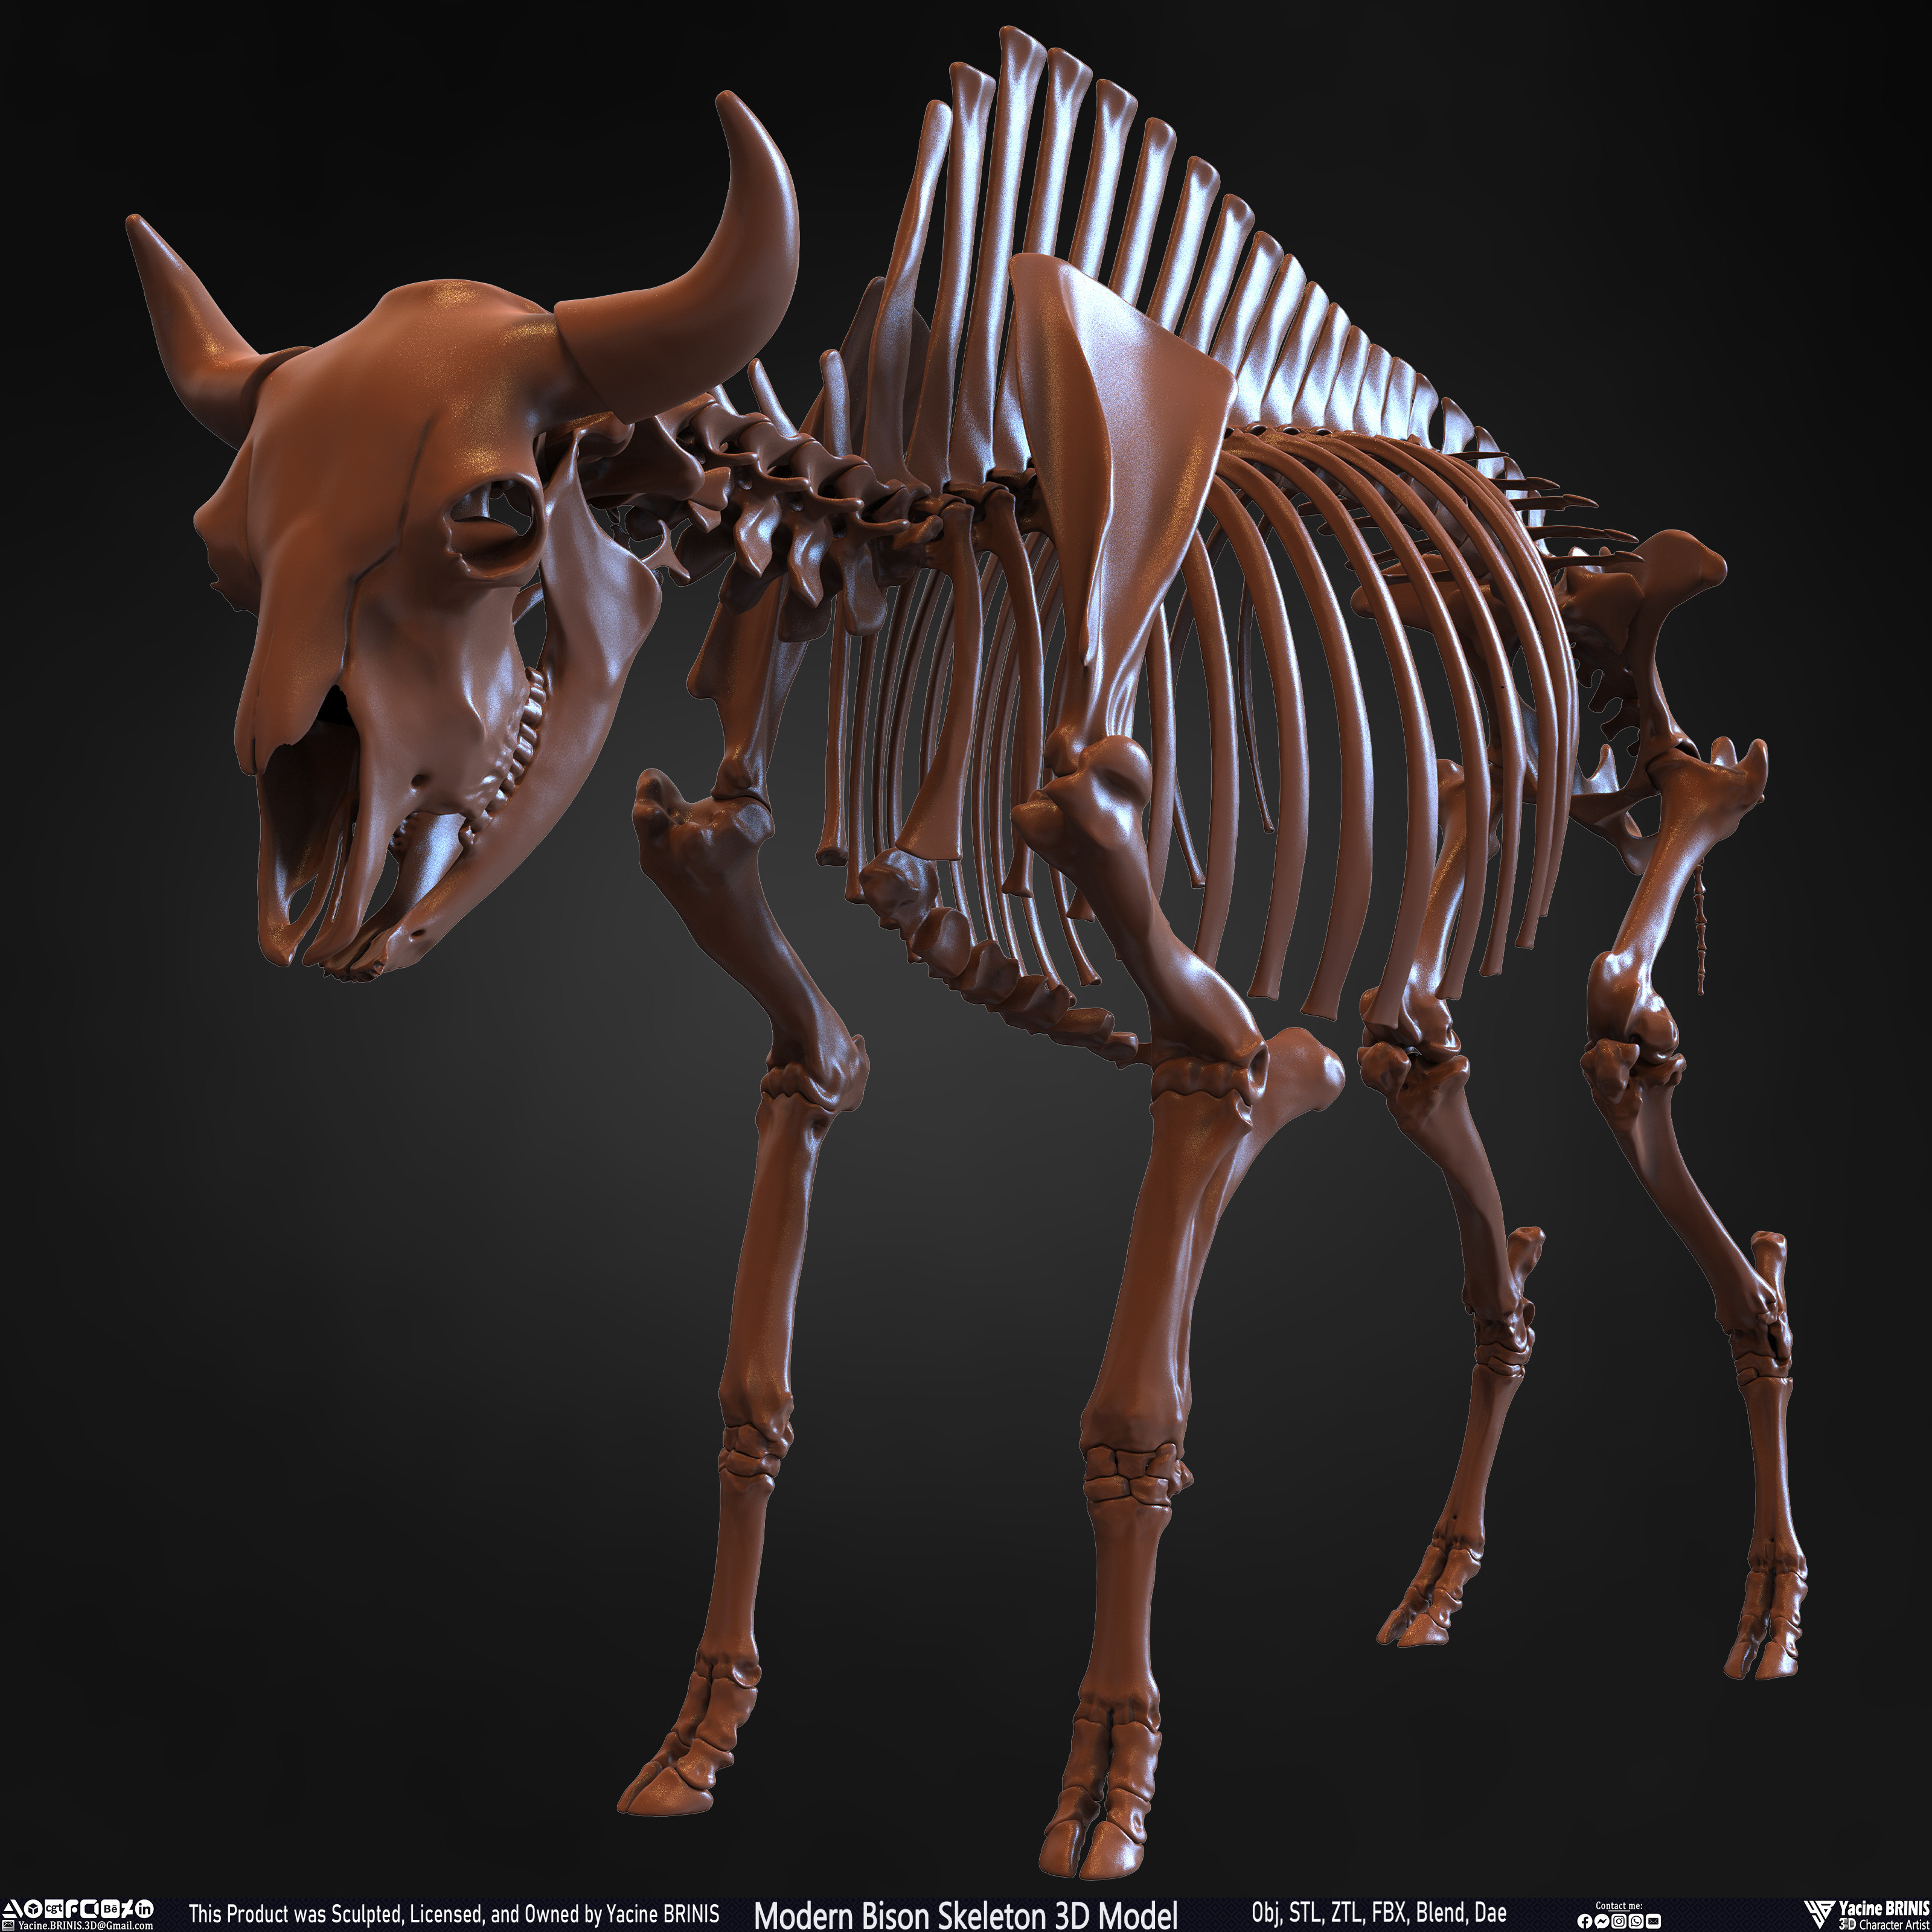 Modern Bison Skeleton 3D Model Sculpted by Yacine BRINIS Set 013